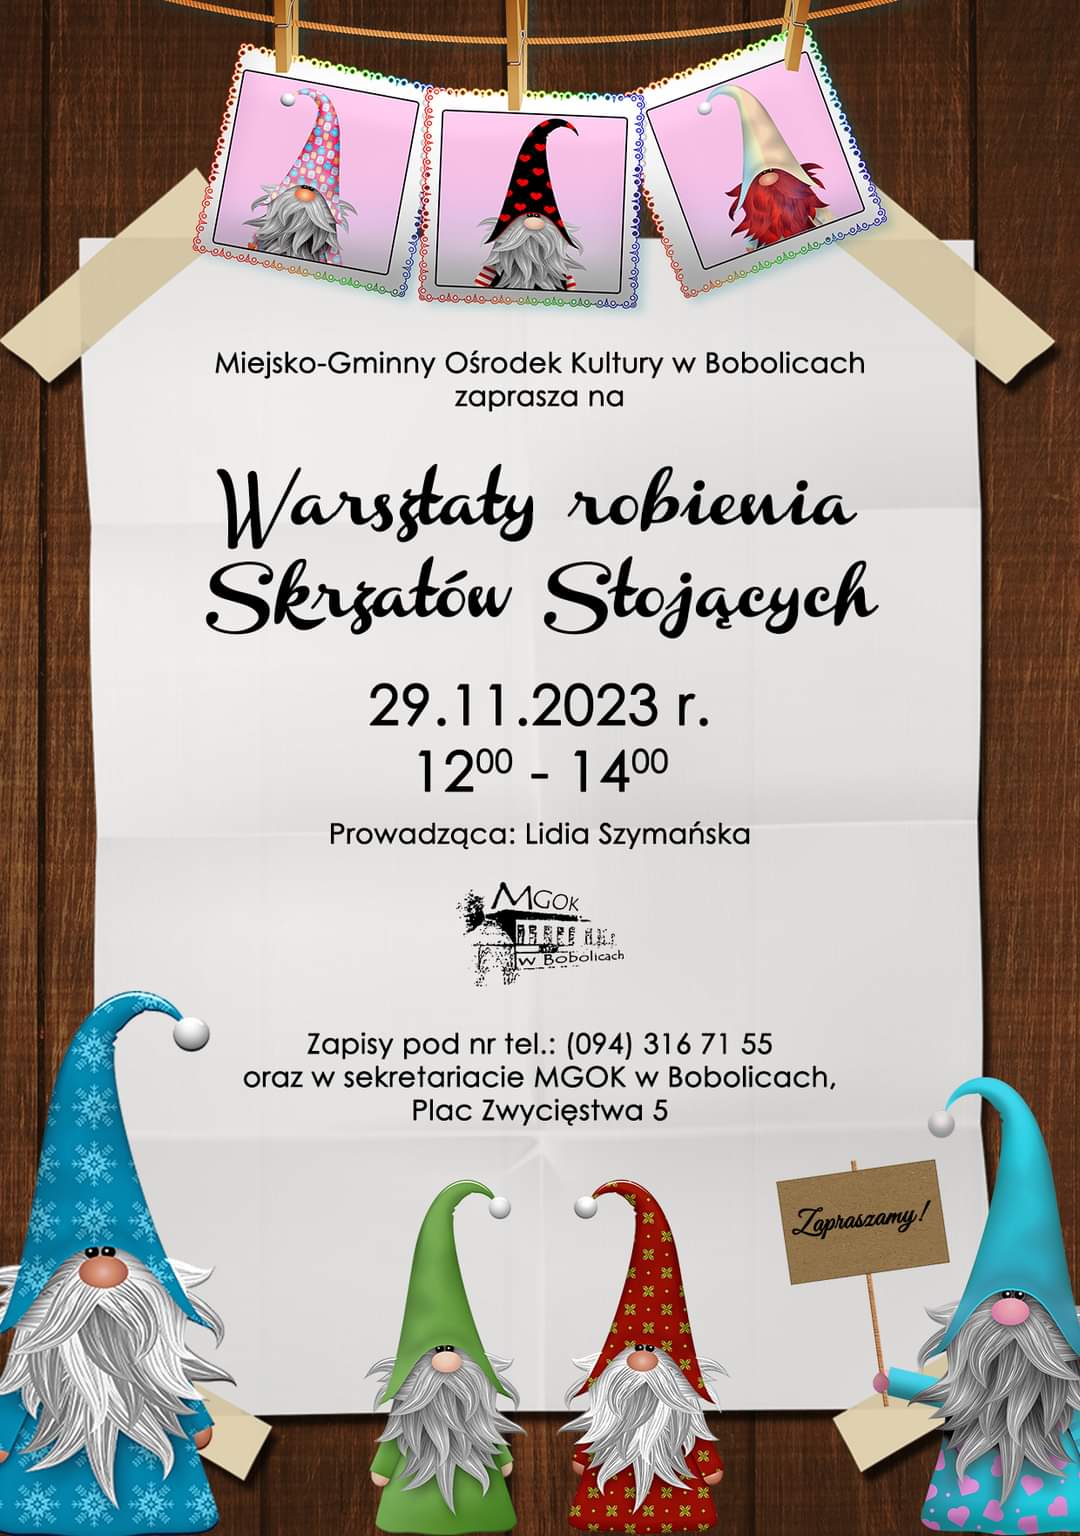 Plakat z zaproszeniem na warsztaty robienia skrzatów stojących 29 listopad 2023 Bobolice